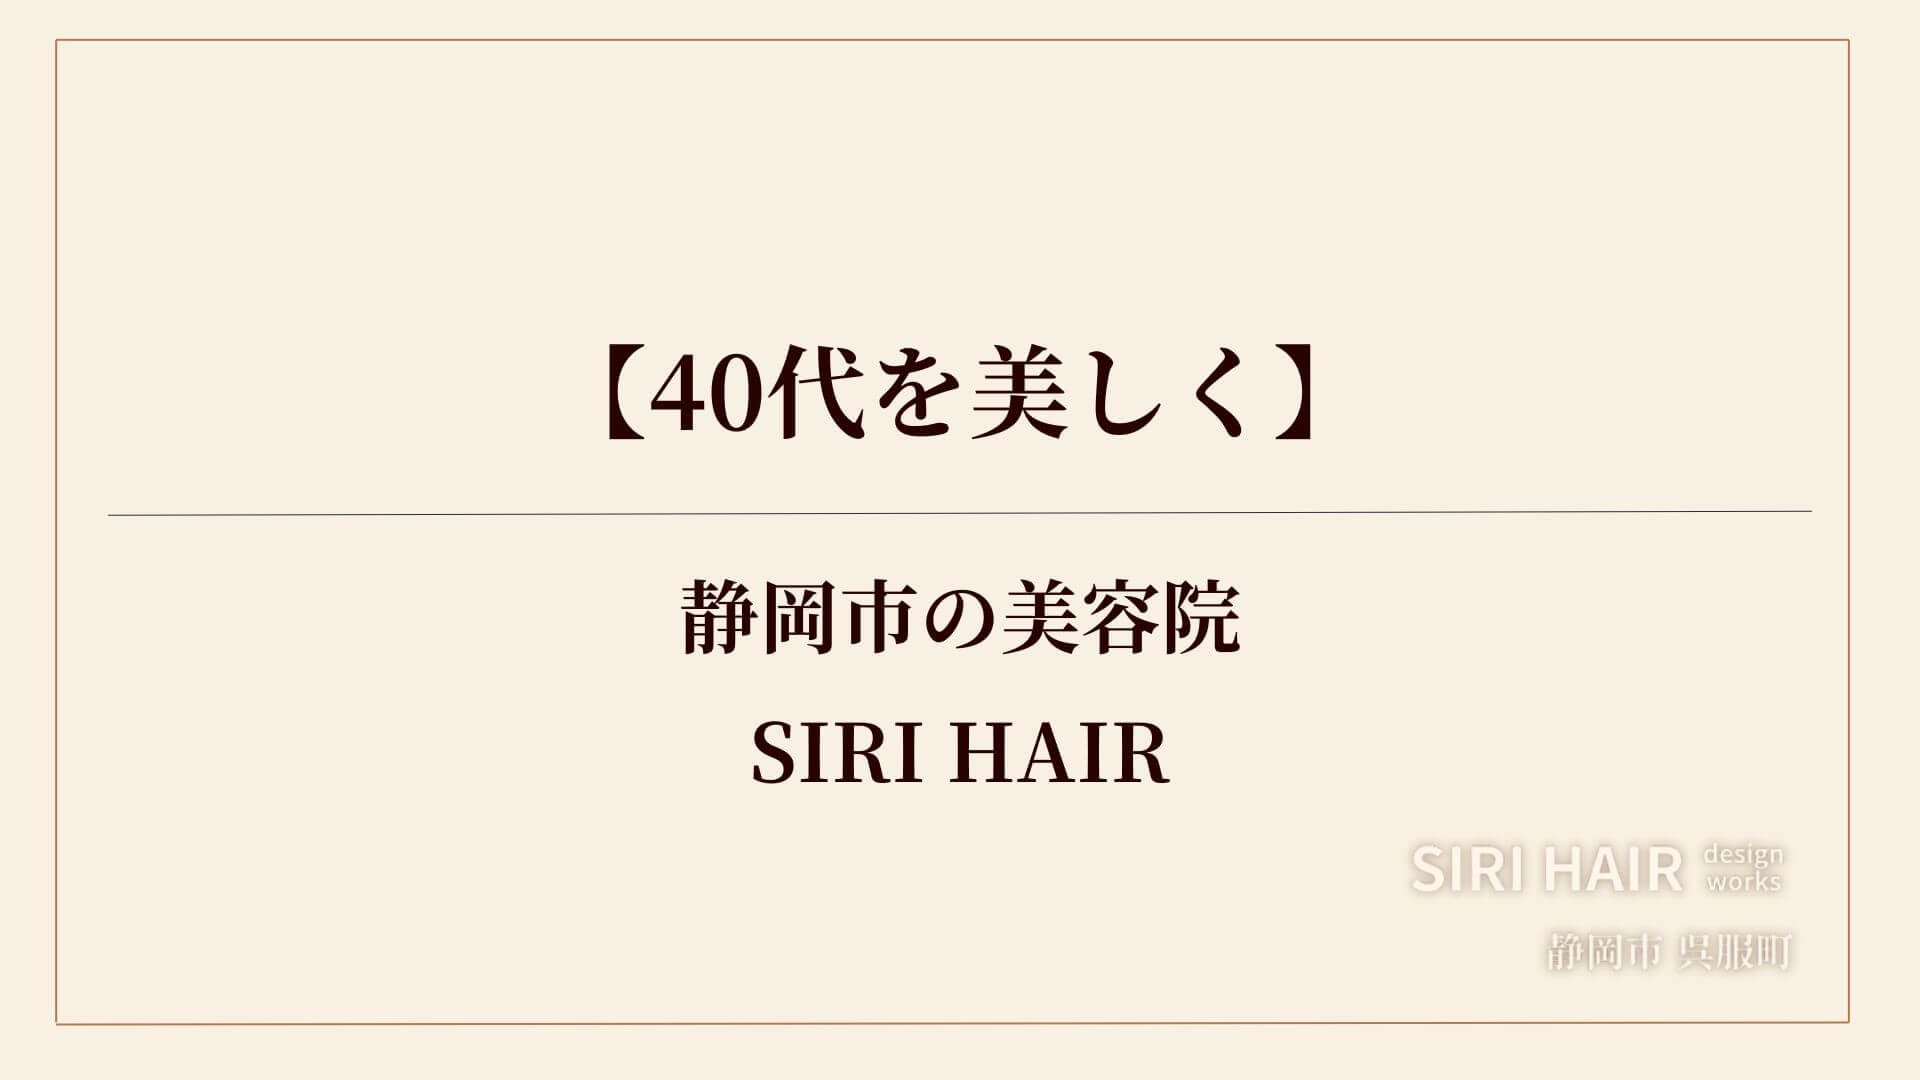 【静岡市】40代を美しくする美容院SIRI HAIR